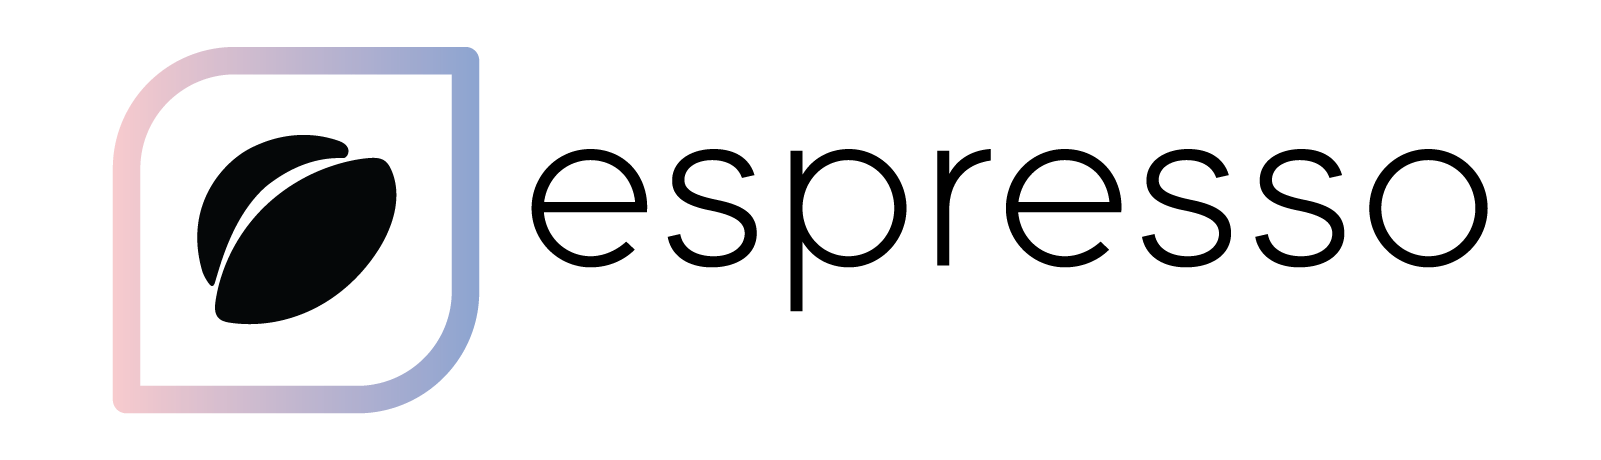 Espresso Logo - 2017 Espresso Logo